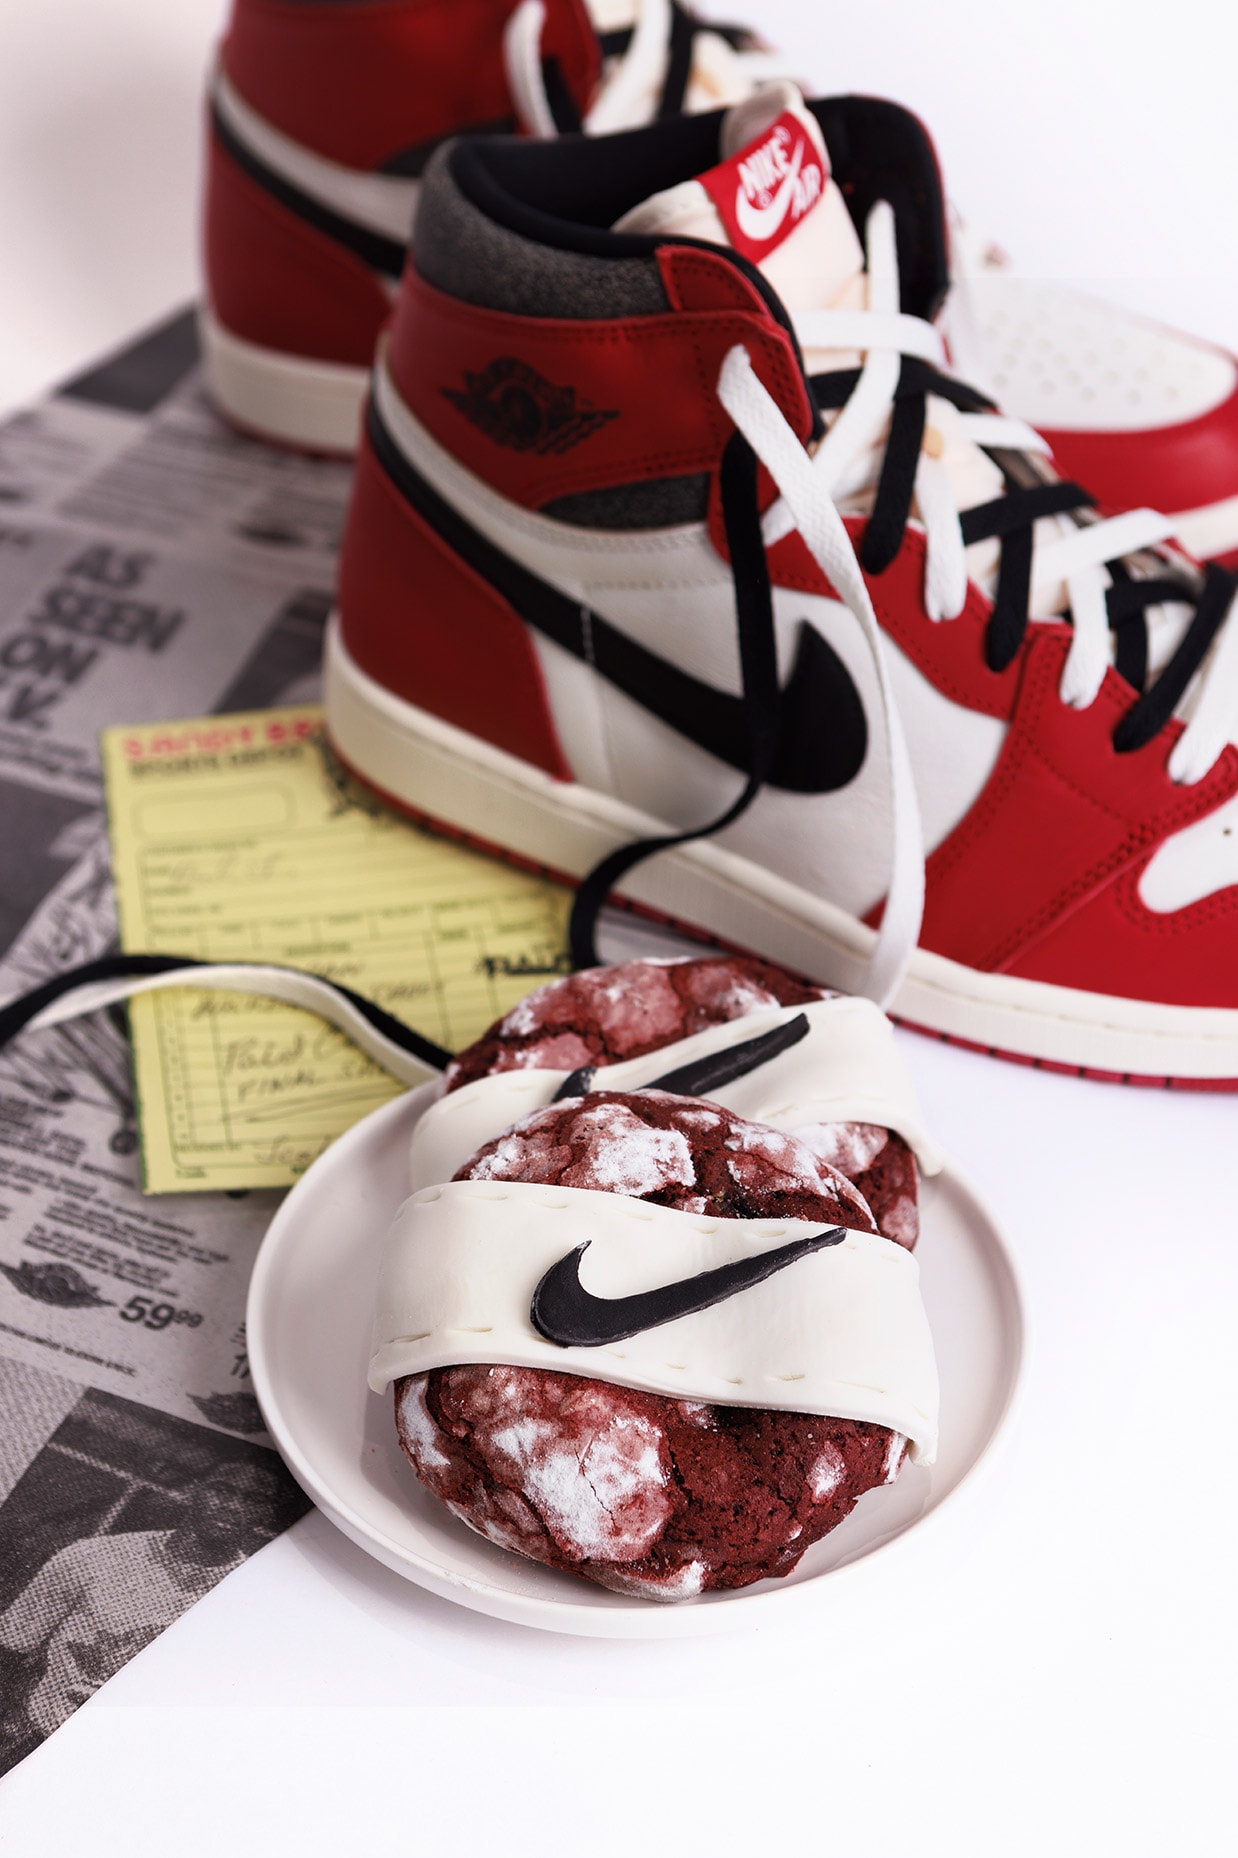 Cookie DPT Sneaker Surge Sneaker DPT pop-up info food cookies food snacks hong kong nike off-white jordans 